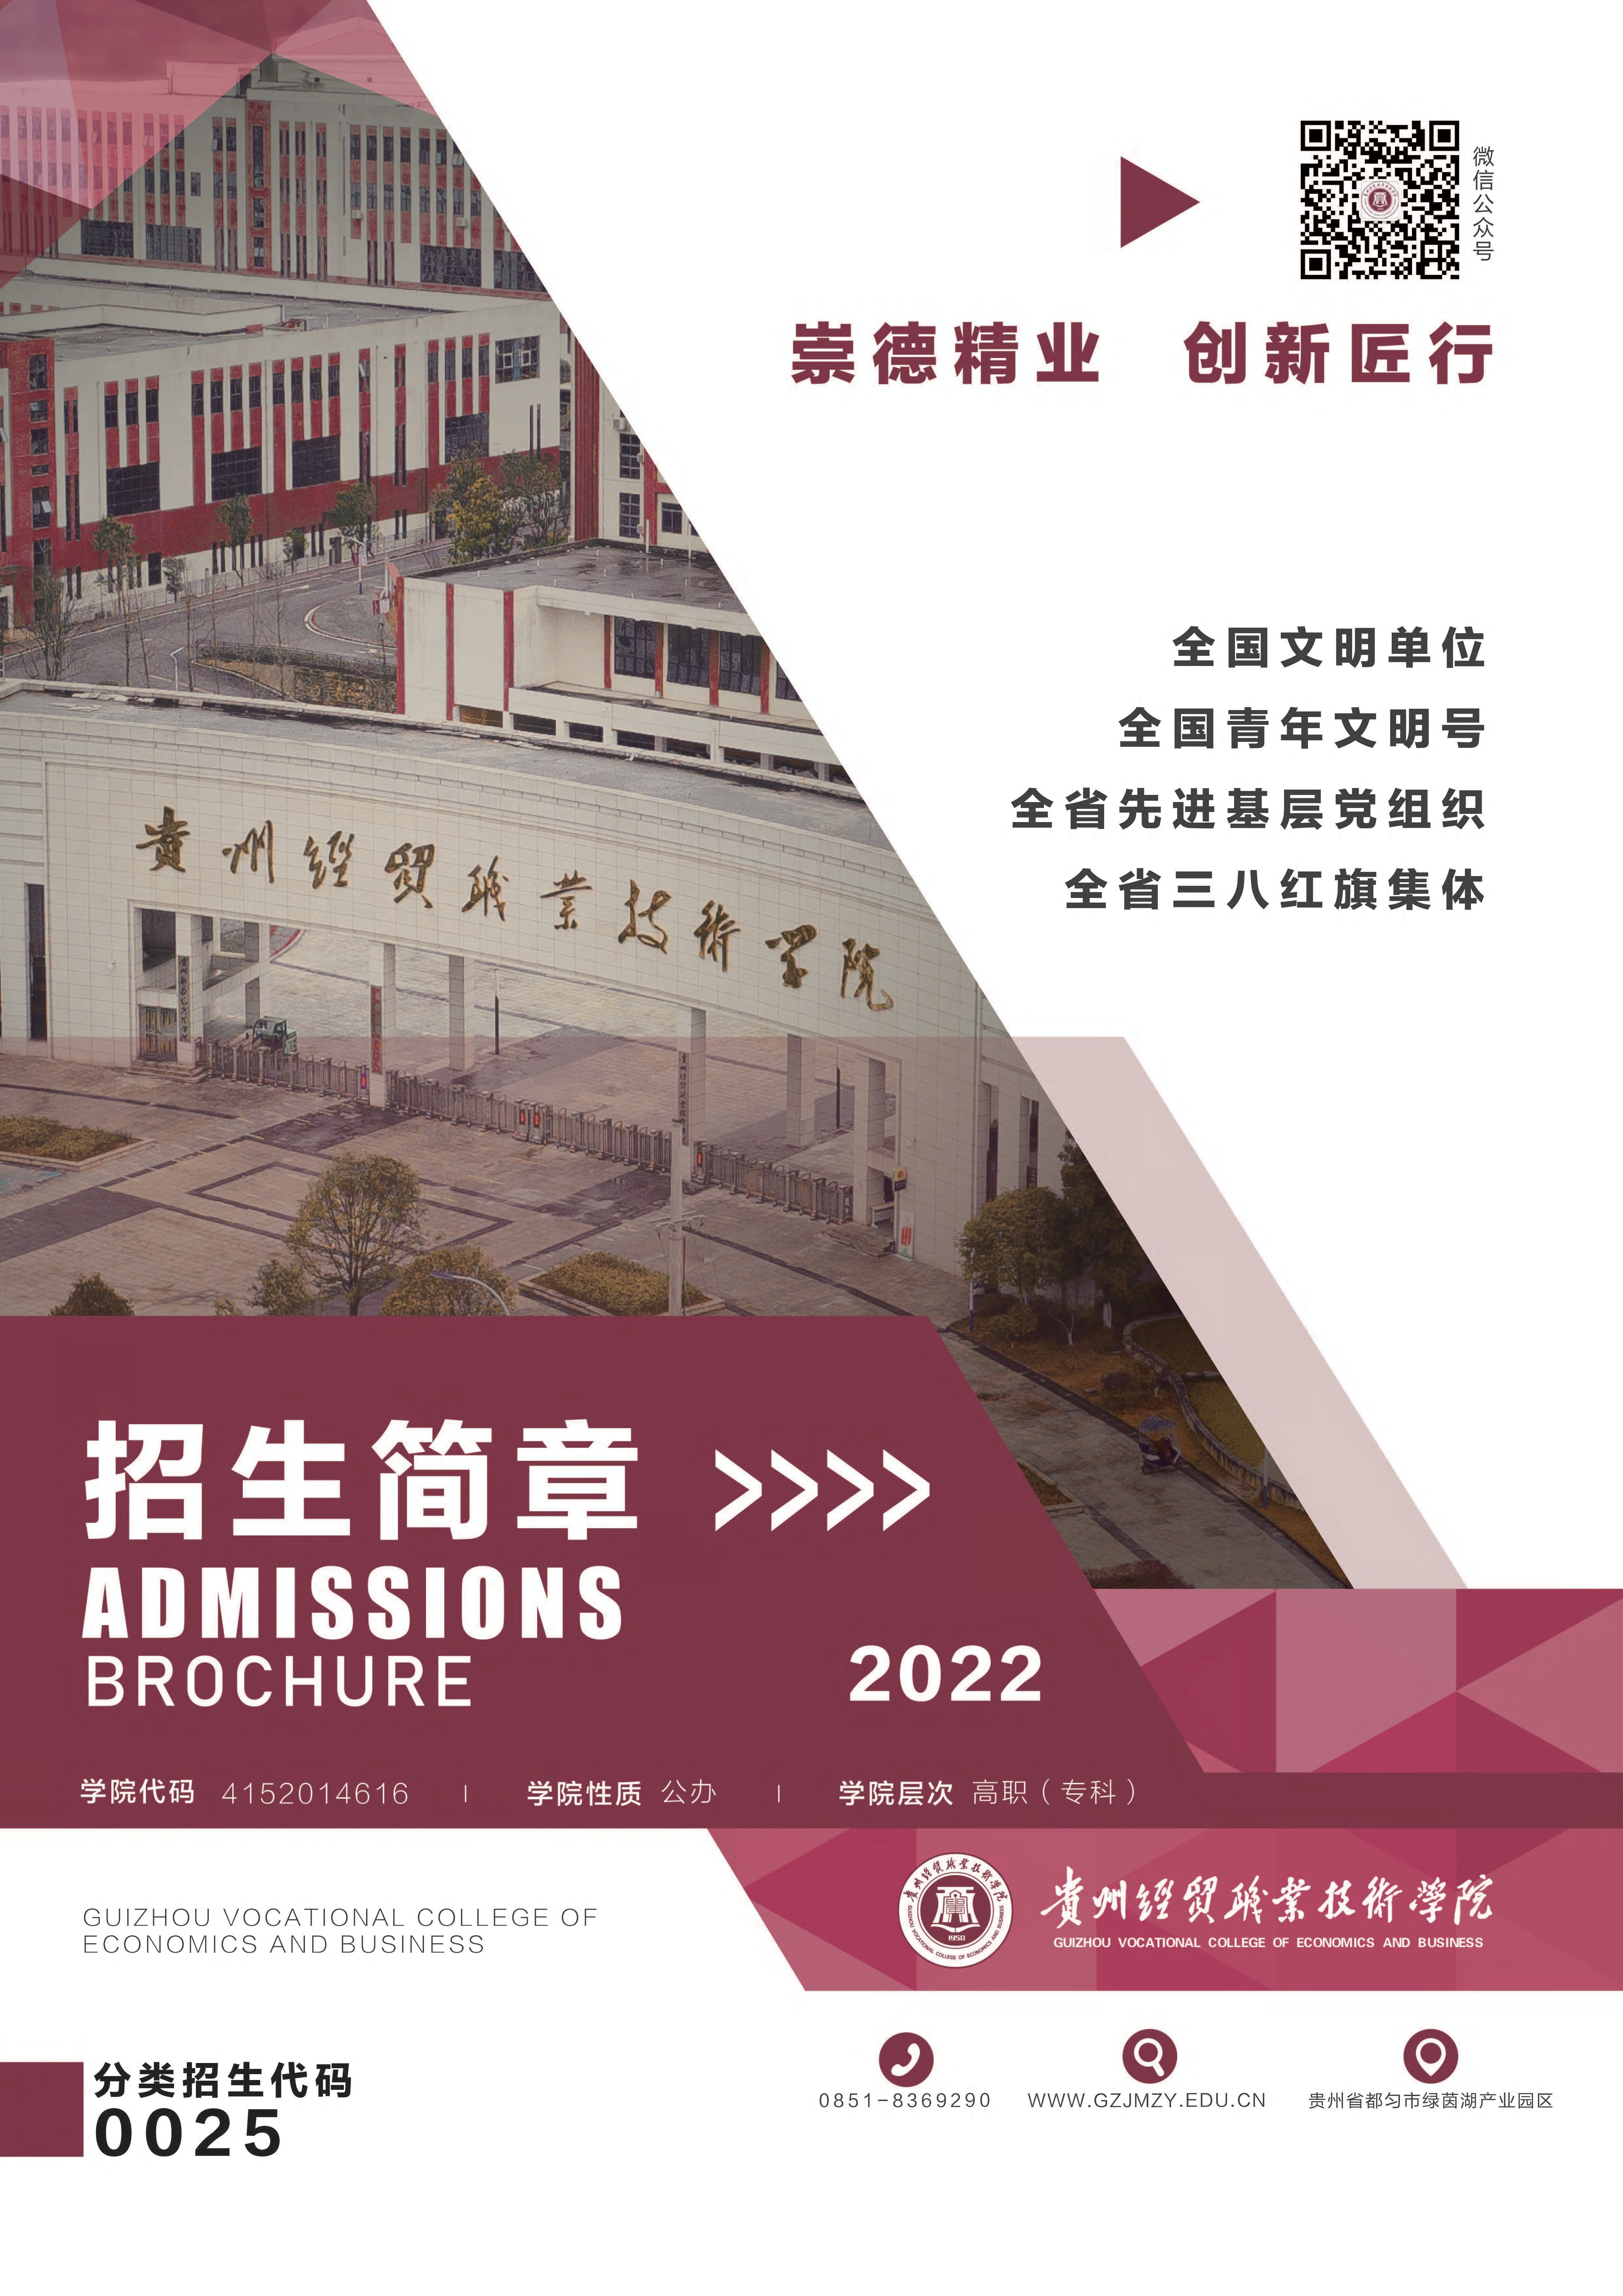 贵州经贸职业技术学院2022年招生简章 有代码 _4.jpg